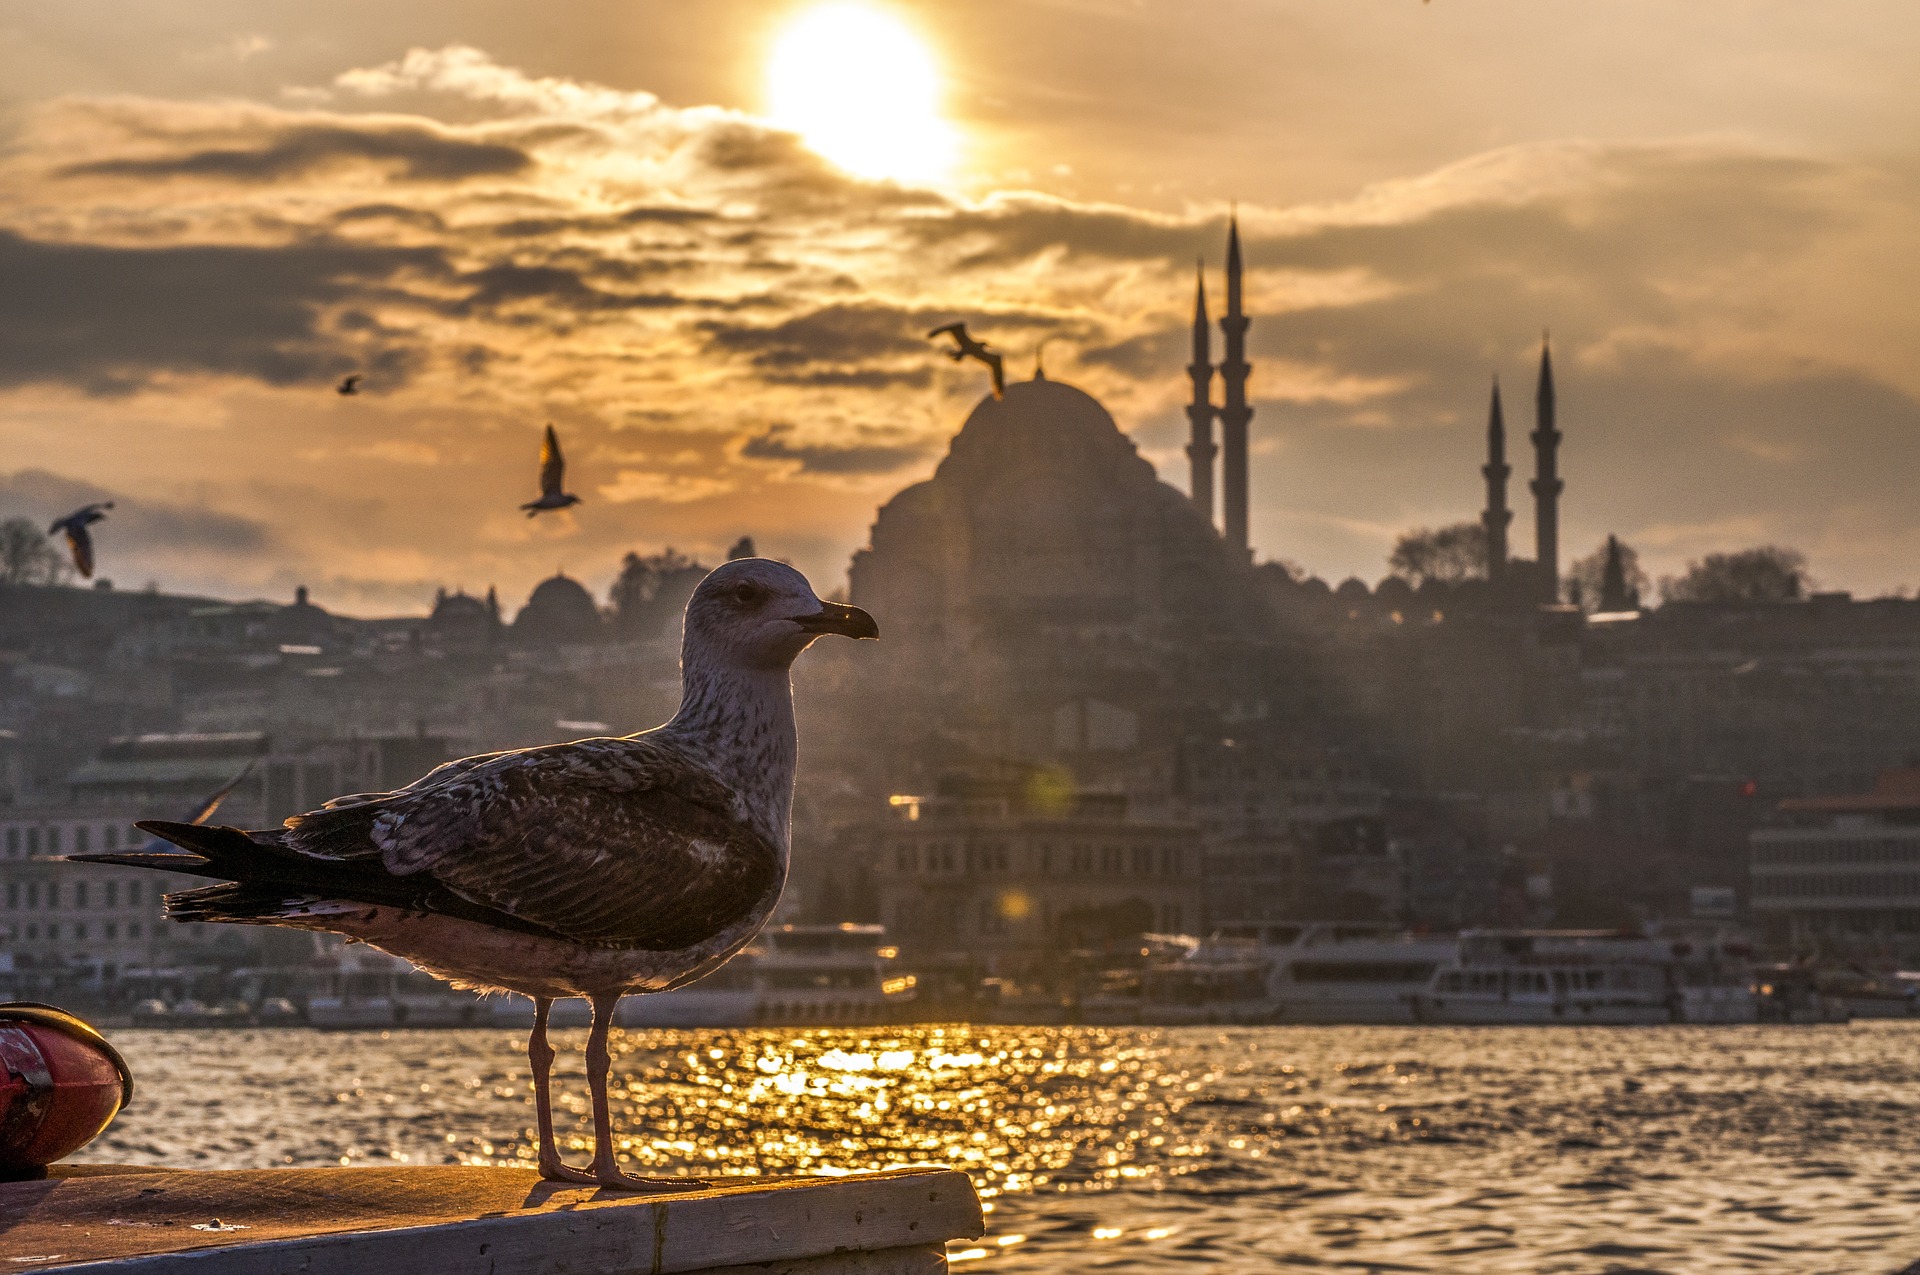 miniferie i istanbul, fakta om istanbul, oplevelser i istanbul, tyrkiet blogger, dansk i tyrkiet, alanya blog, alanya blogger, dansk rejseblog, udlandsdansker blog